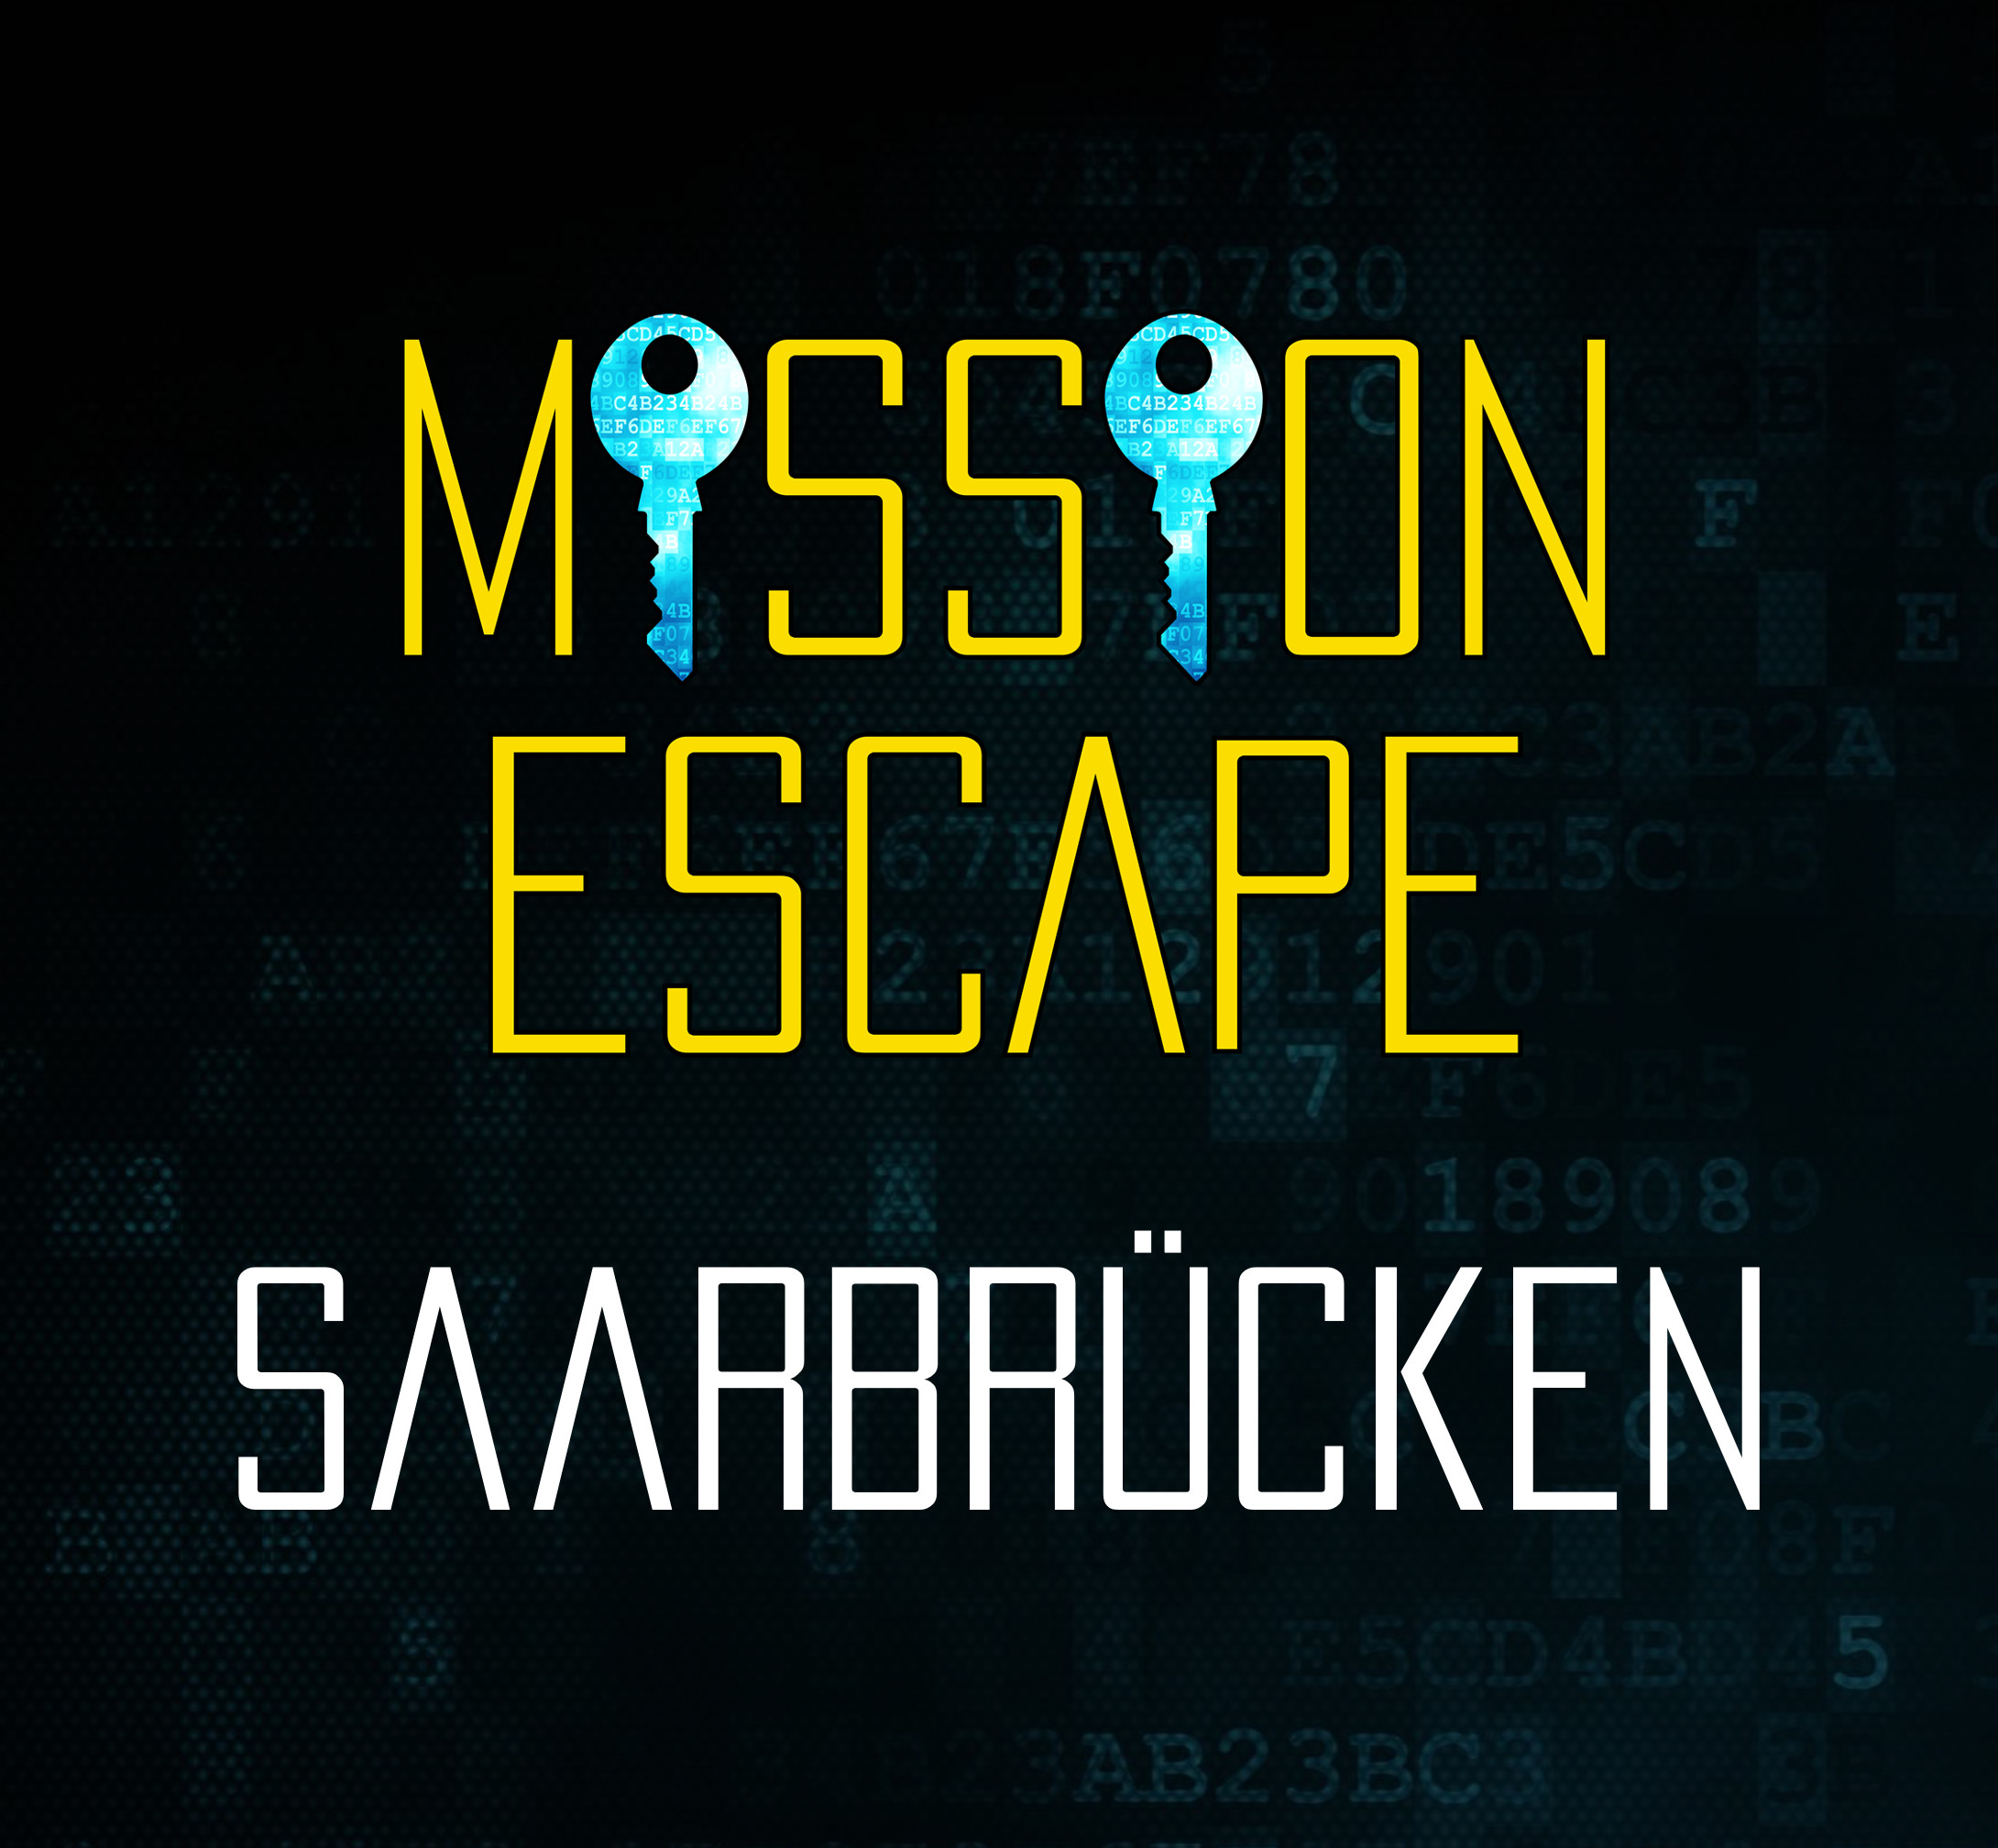 mission-escape-sb